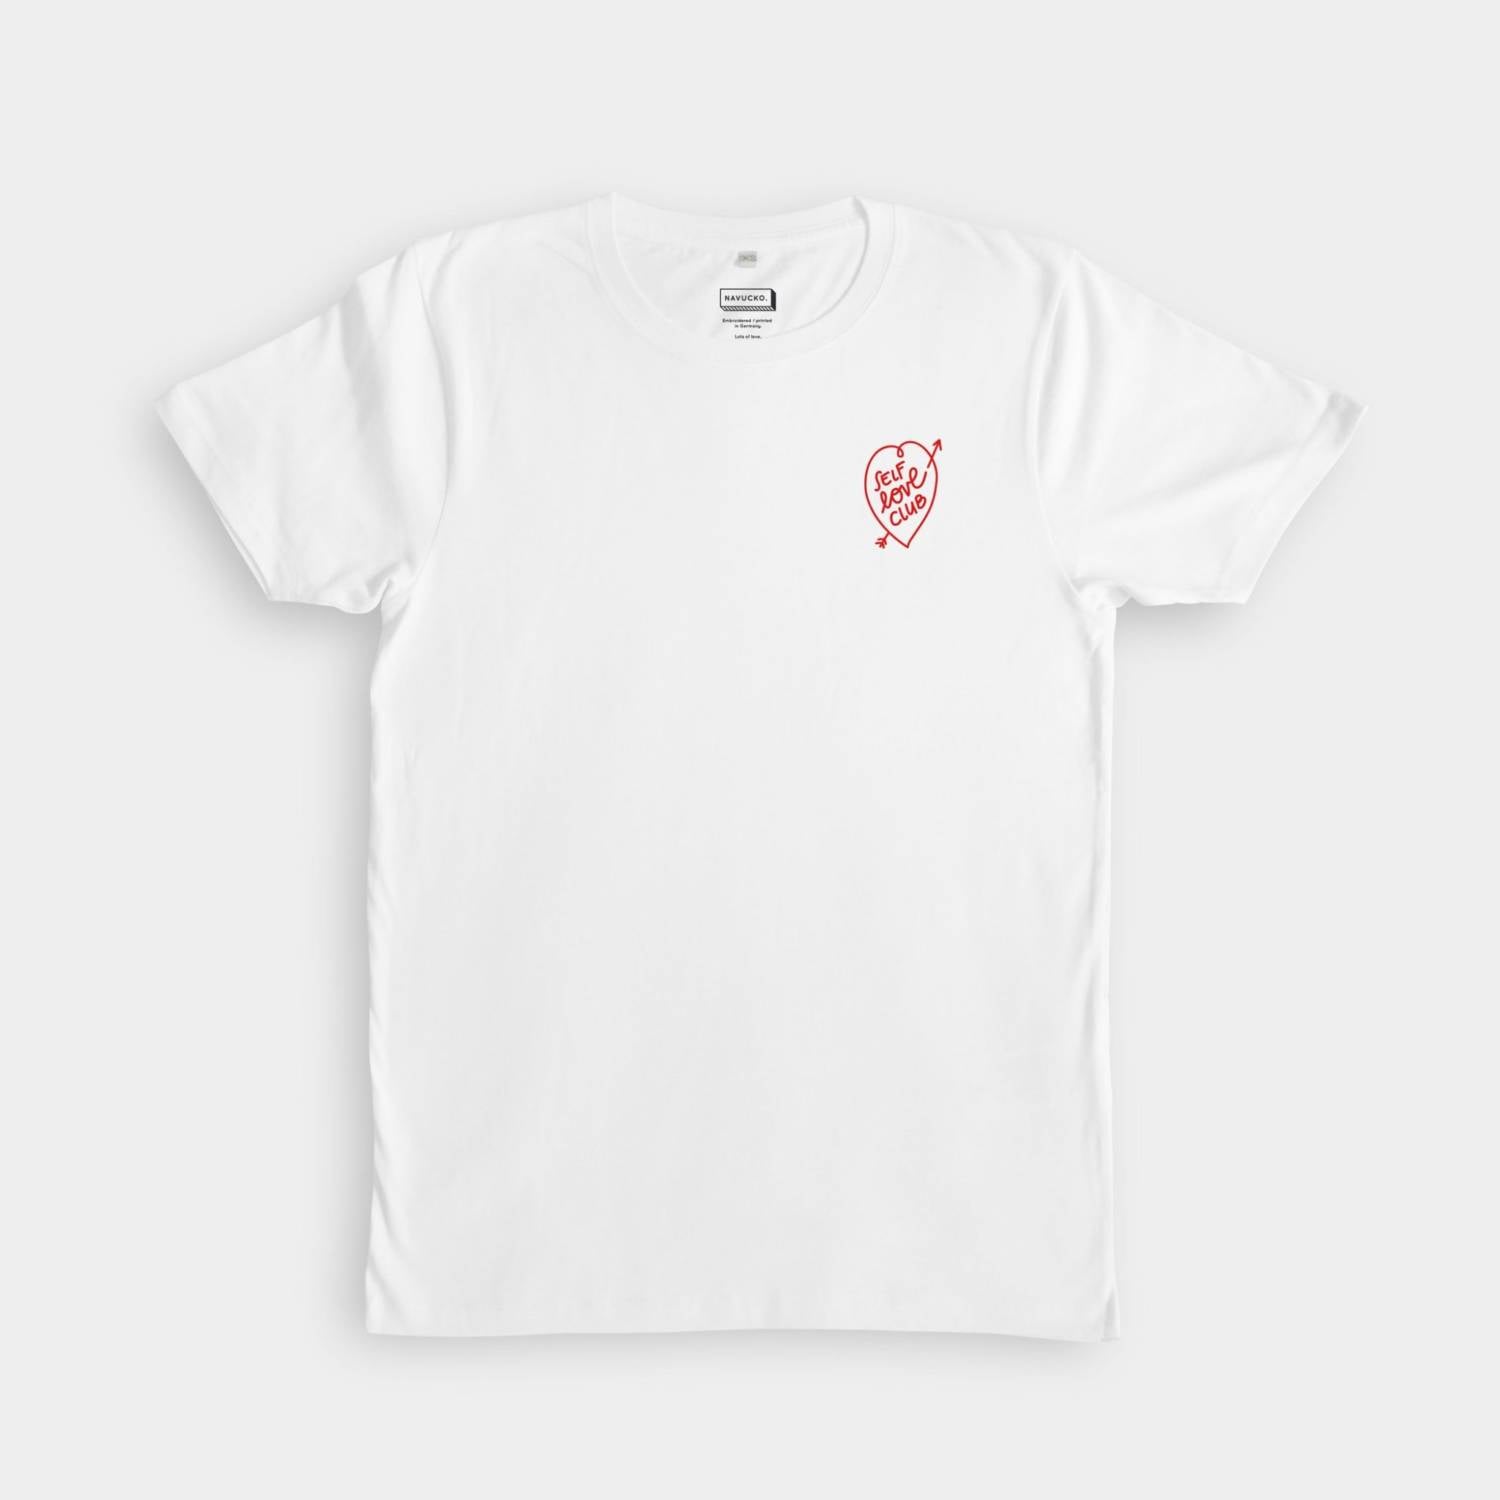 Navucko Weißes T-Shirt Self Love Club mit rotem Motiv